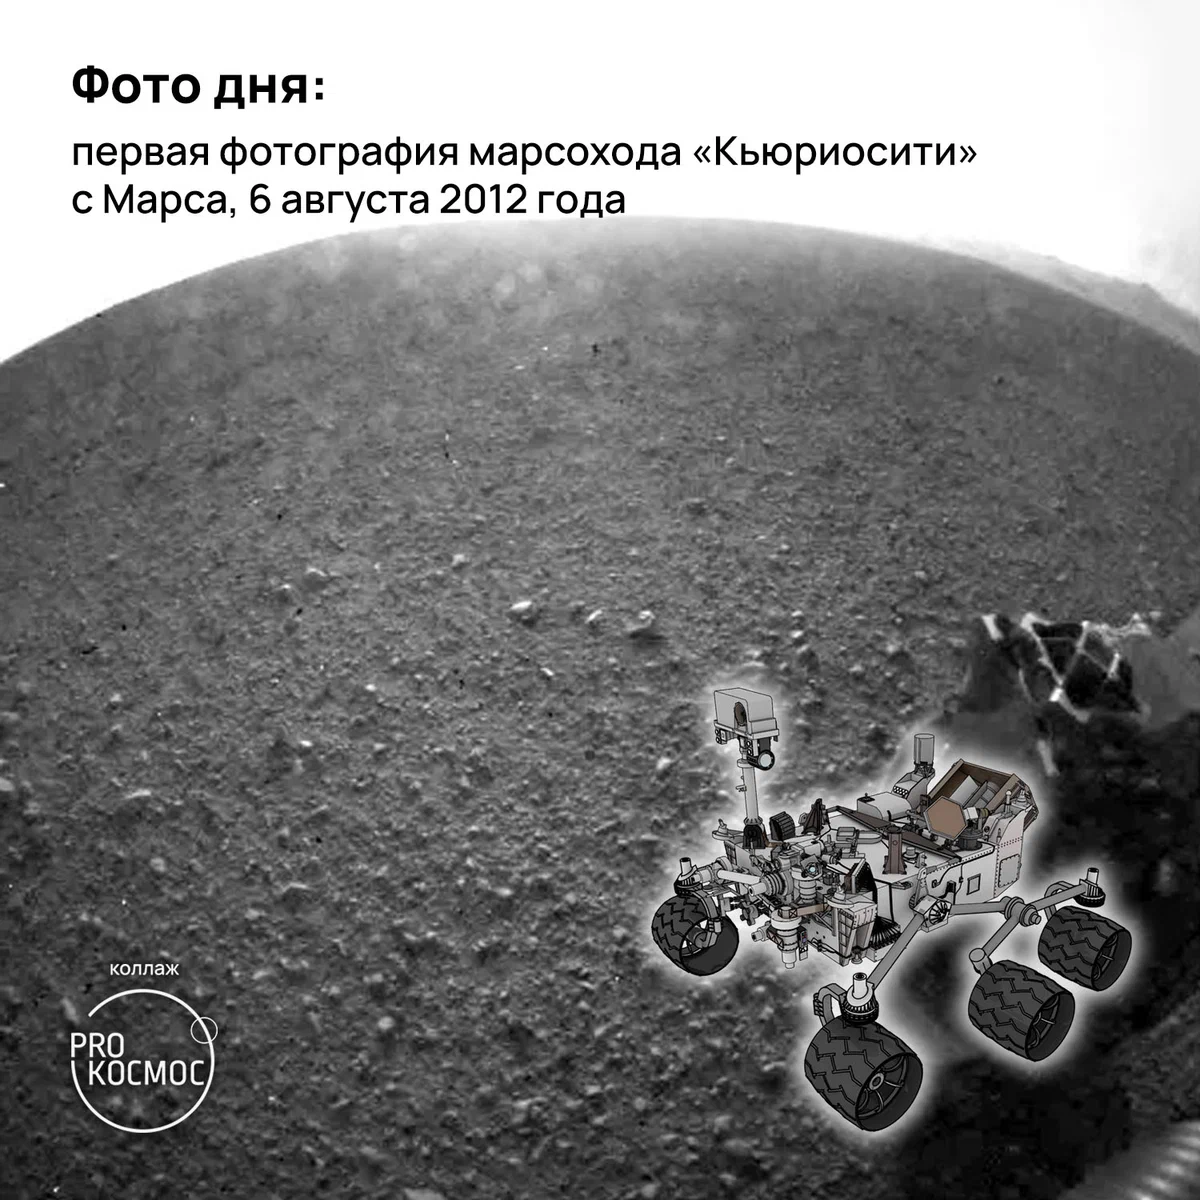 Фото дня: первая фотография марсохода «Кьюриосити» с Марса, 6 августа 2012 года height=1200px width=1200px